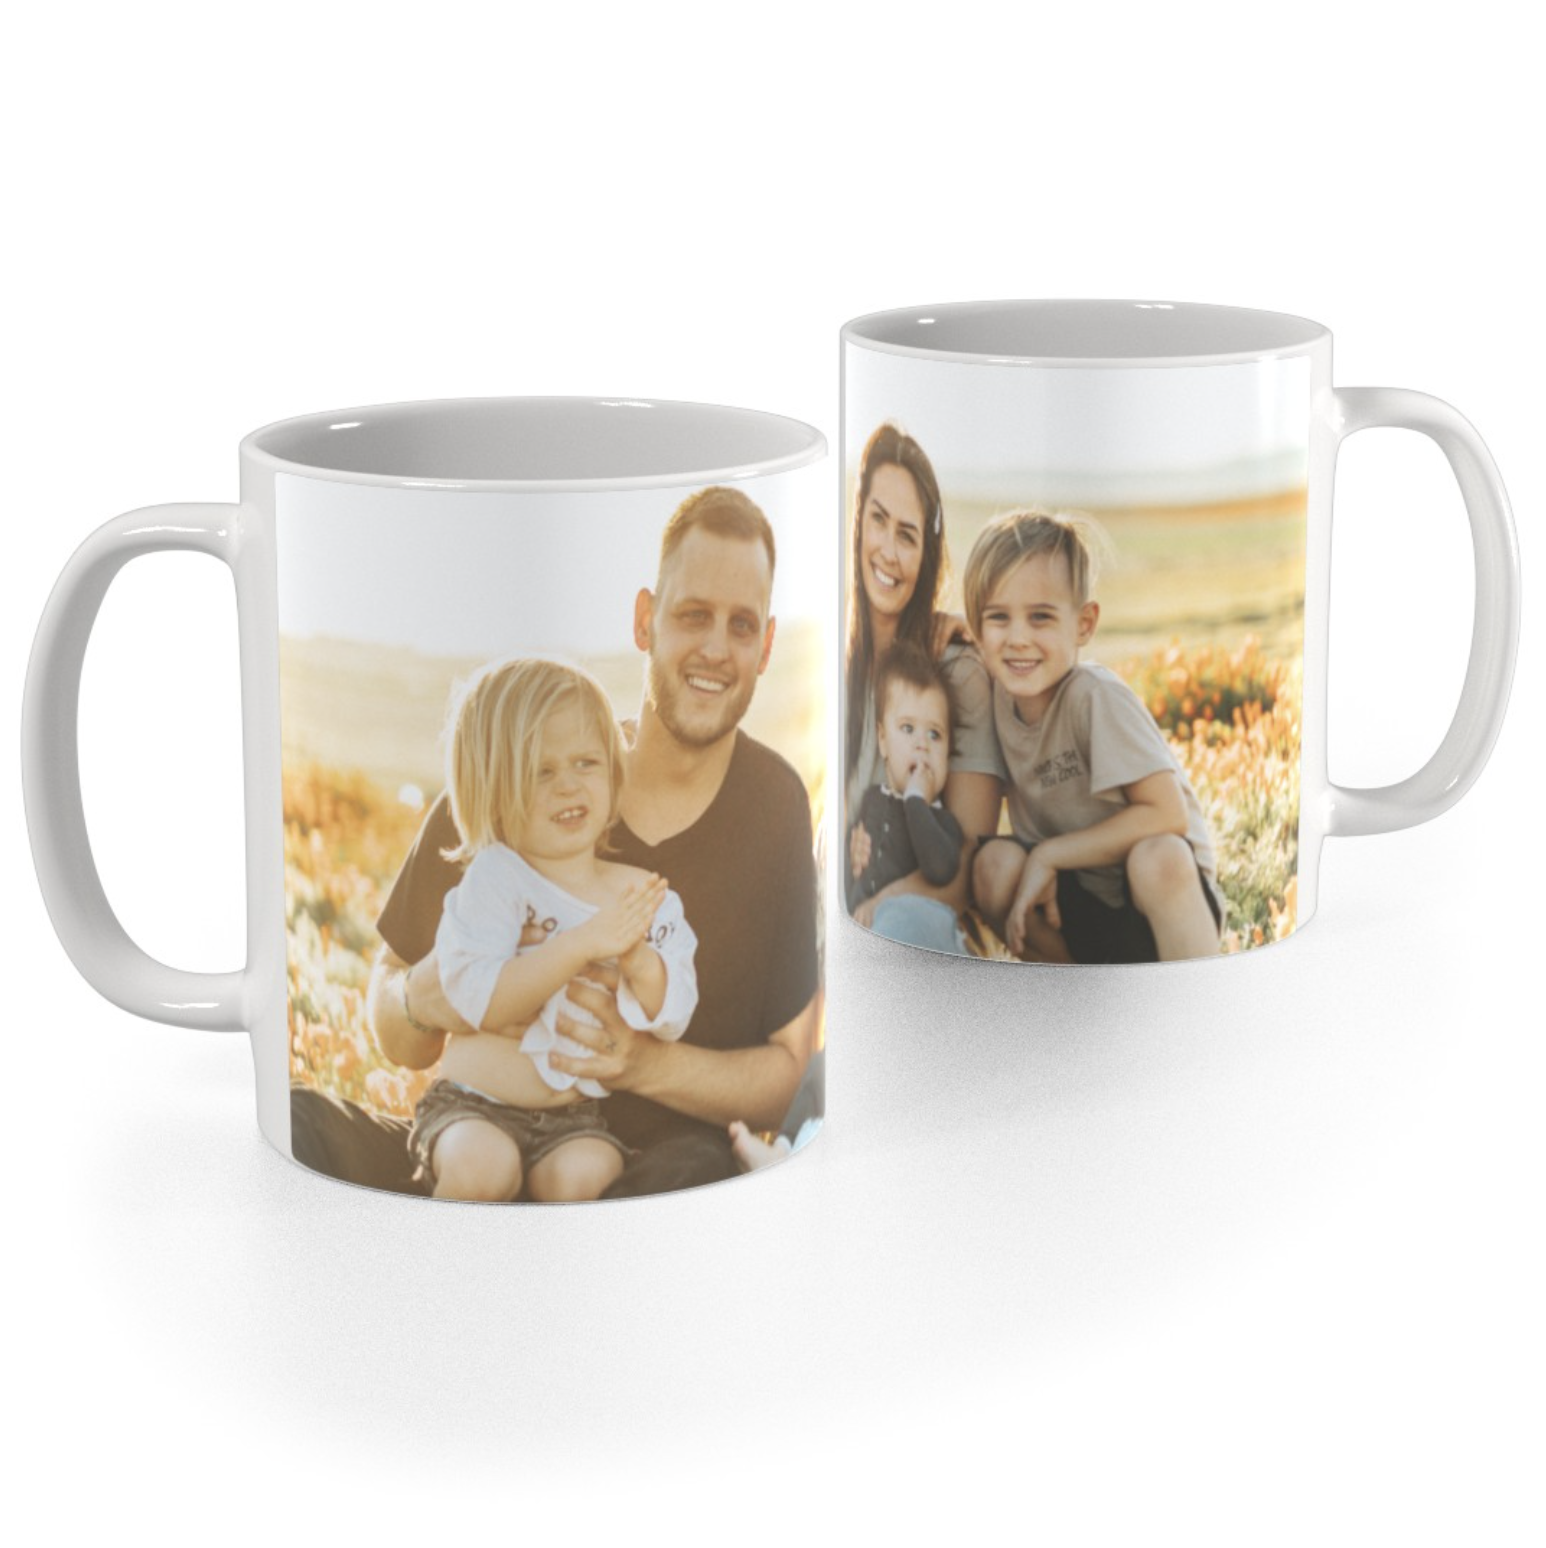 White mug with family photo on it